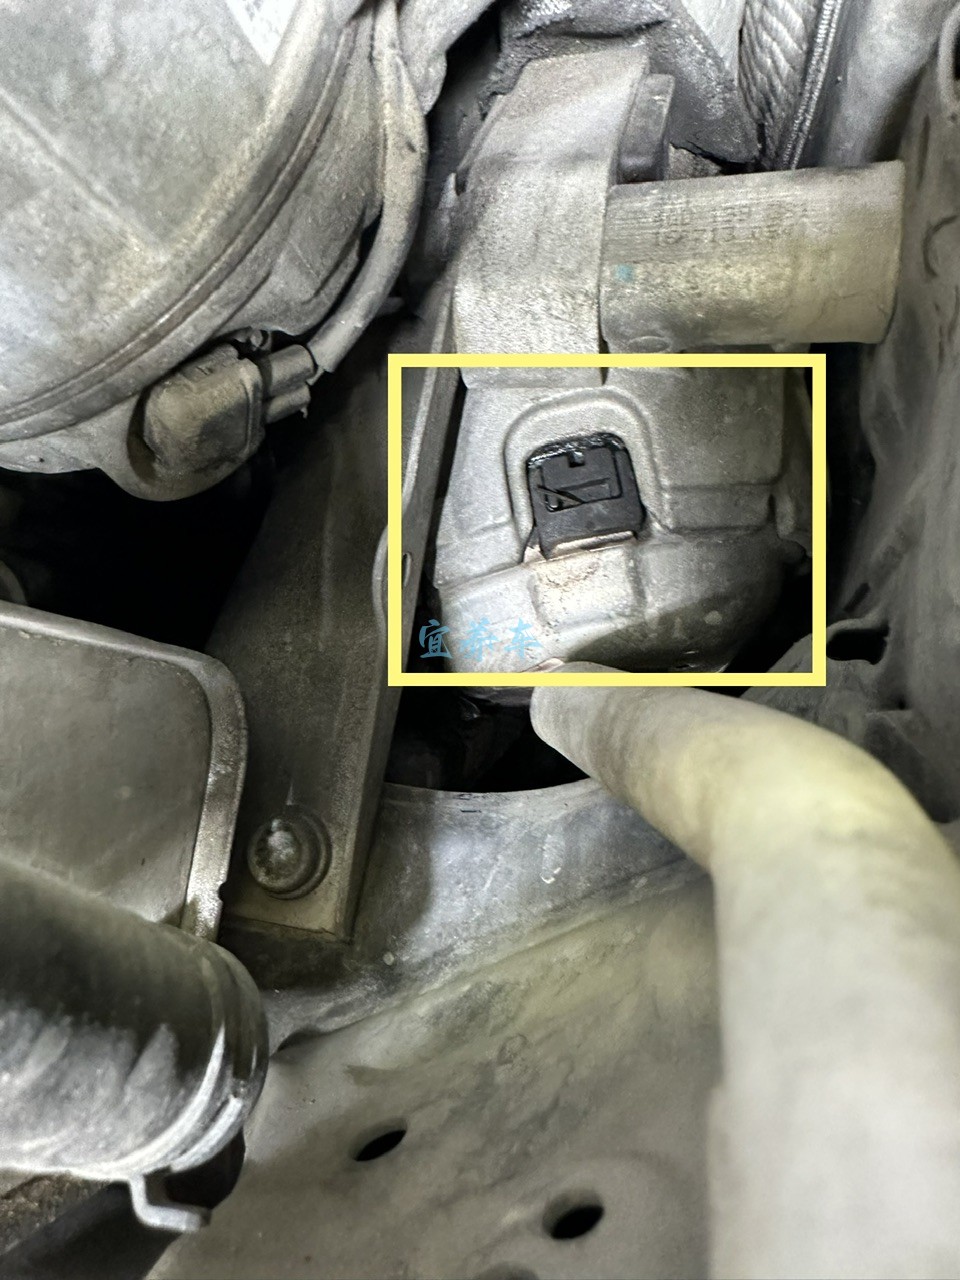 奥迪A7 冷车启动延时、车身震动、维修记录-图片1